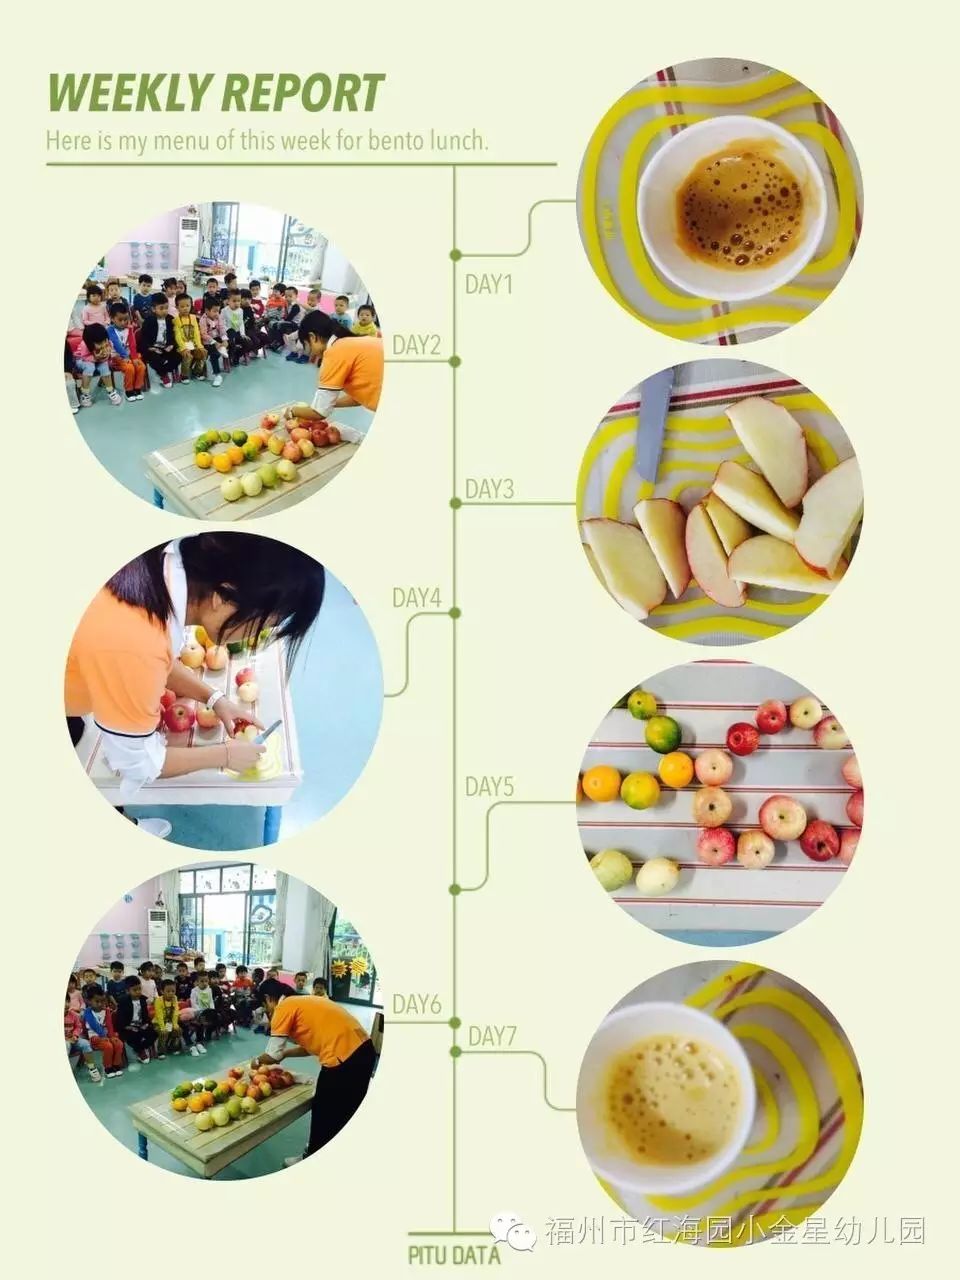 【班级活动】福州红海园小金星幼儿园中三班鲜榨果汁活动